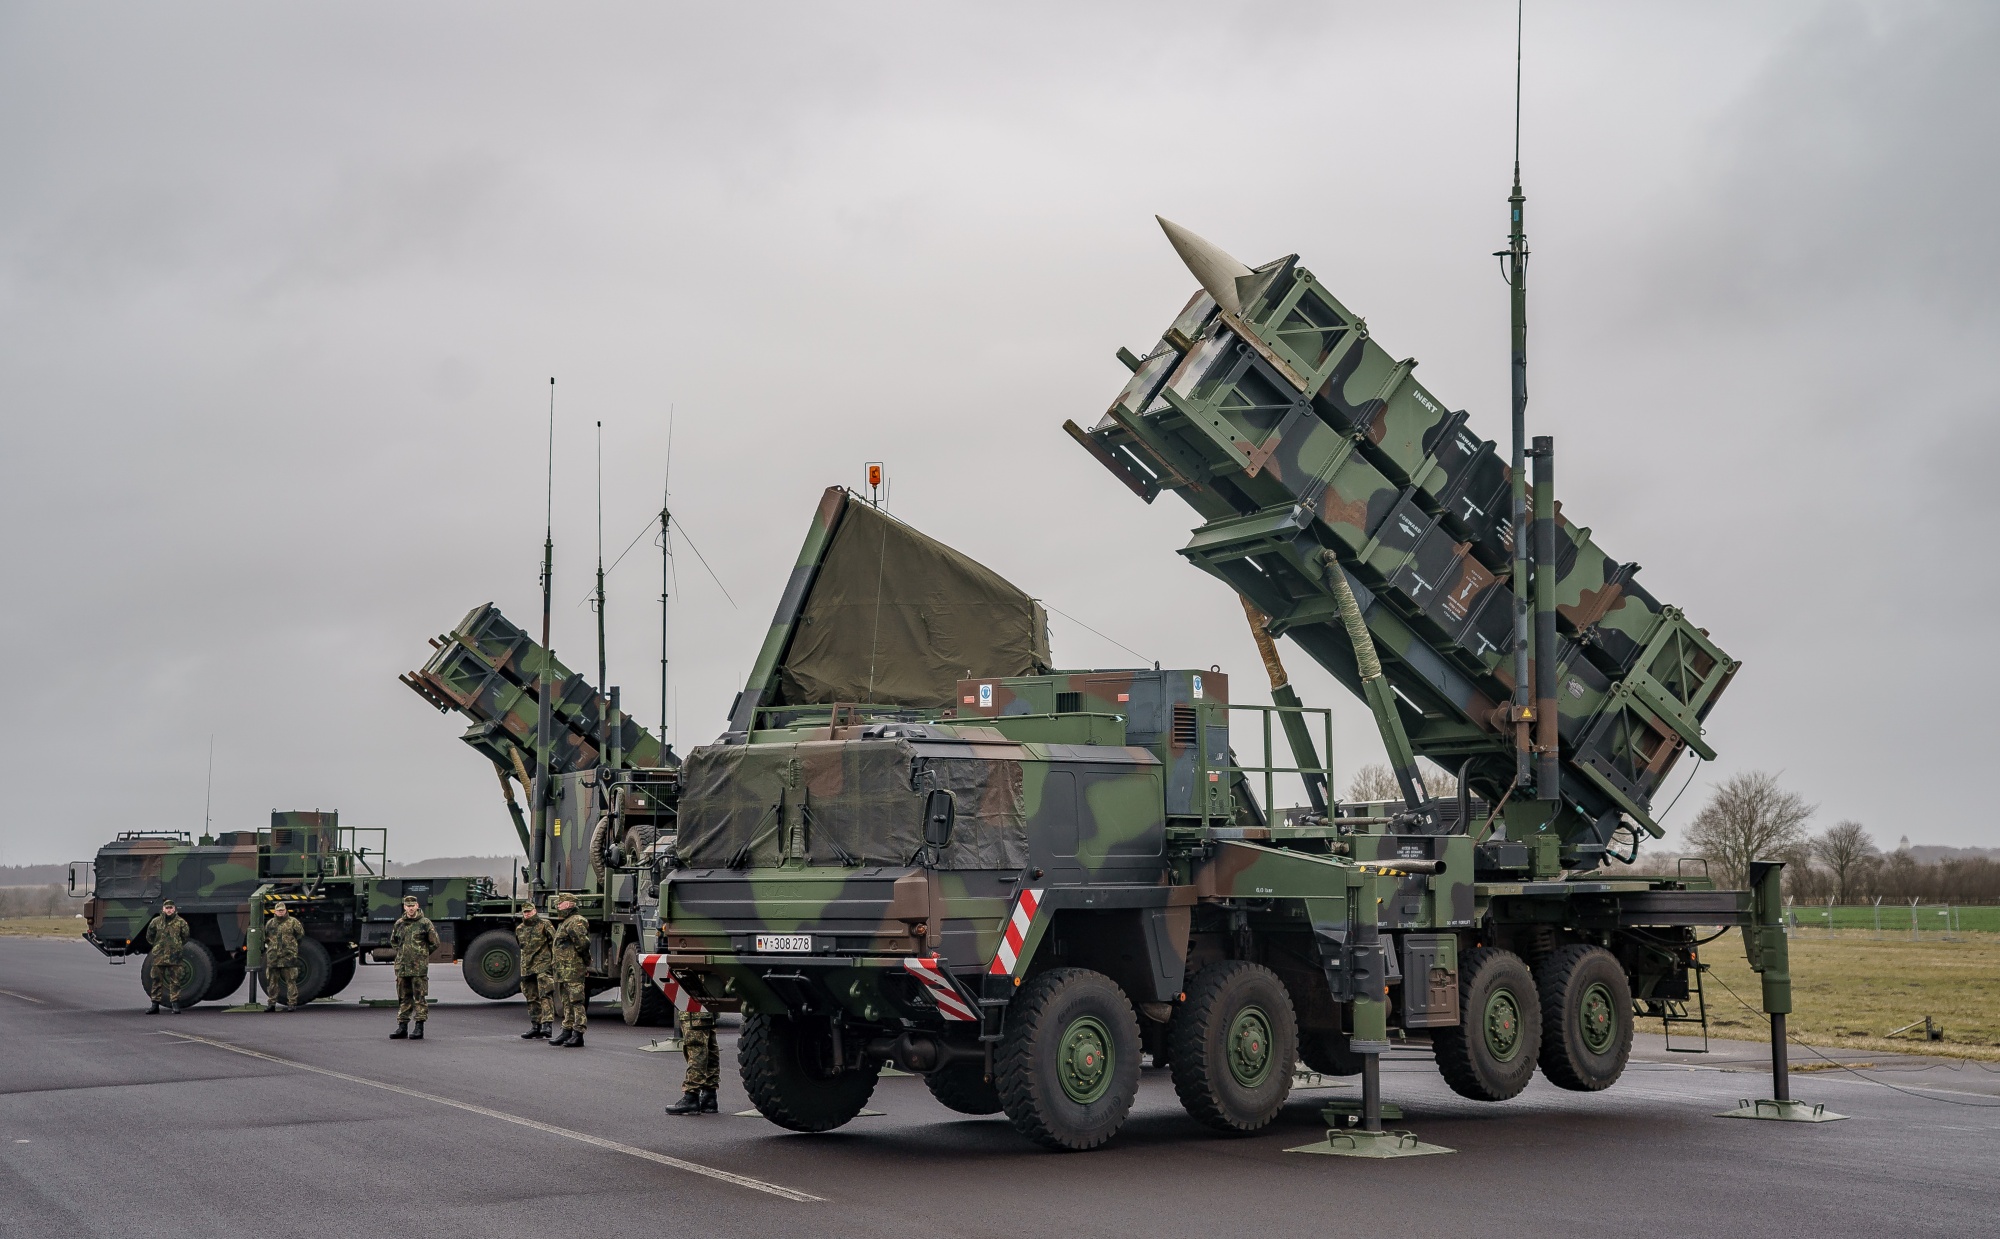 Warszawa skyddas av missilförsvarssystem för första gången i historien - Polen placerar ut Patriot luftvärnsrobotsystem